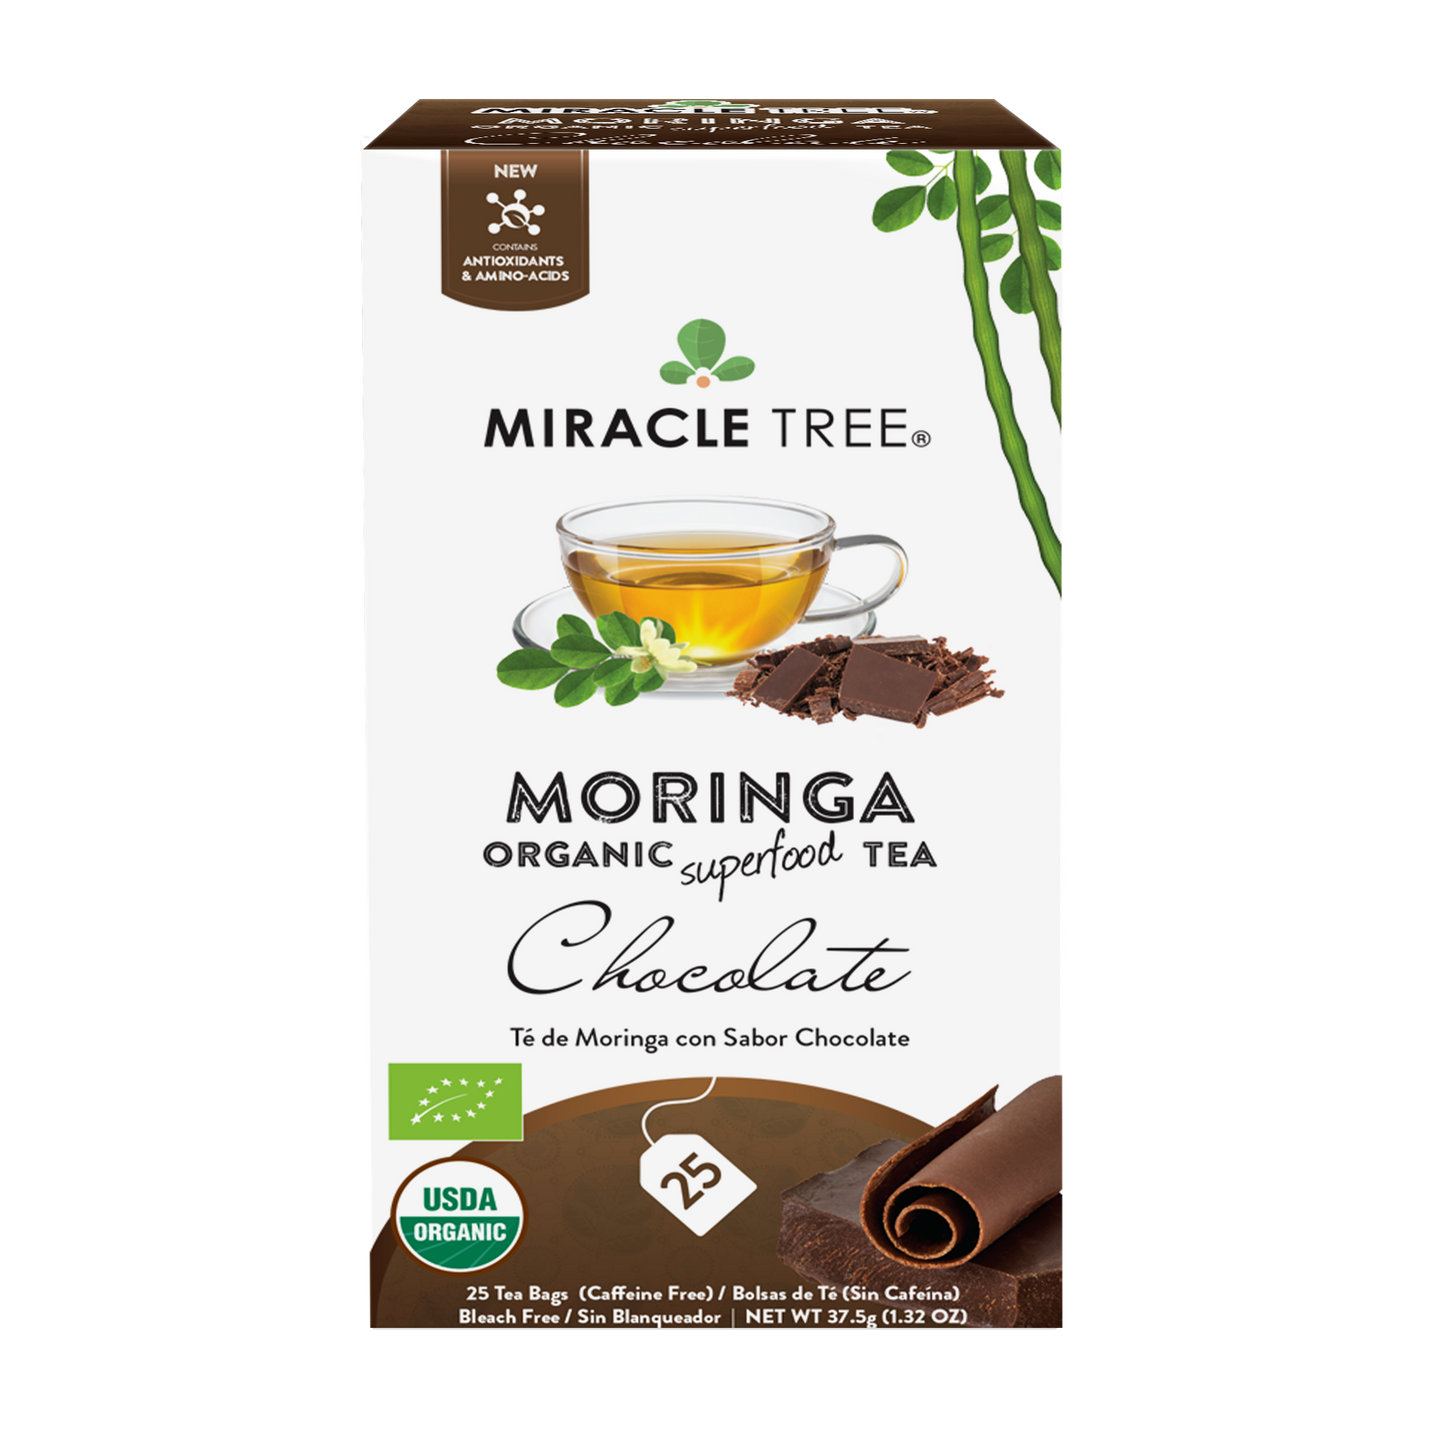 Miracle Tree Organic Moringa Tea Chocolate